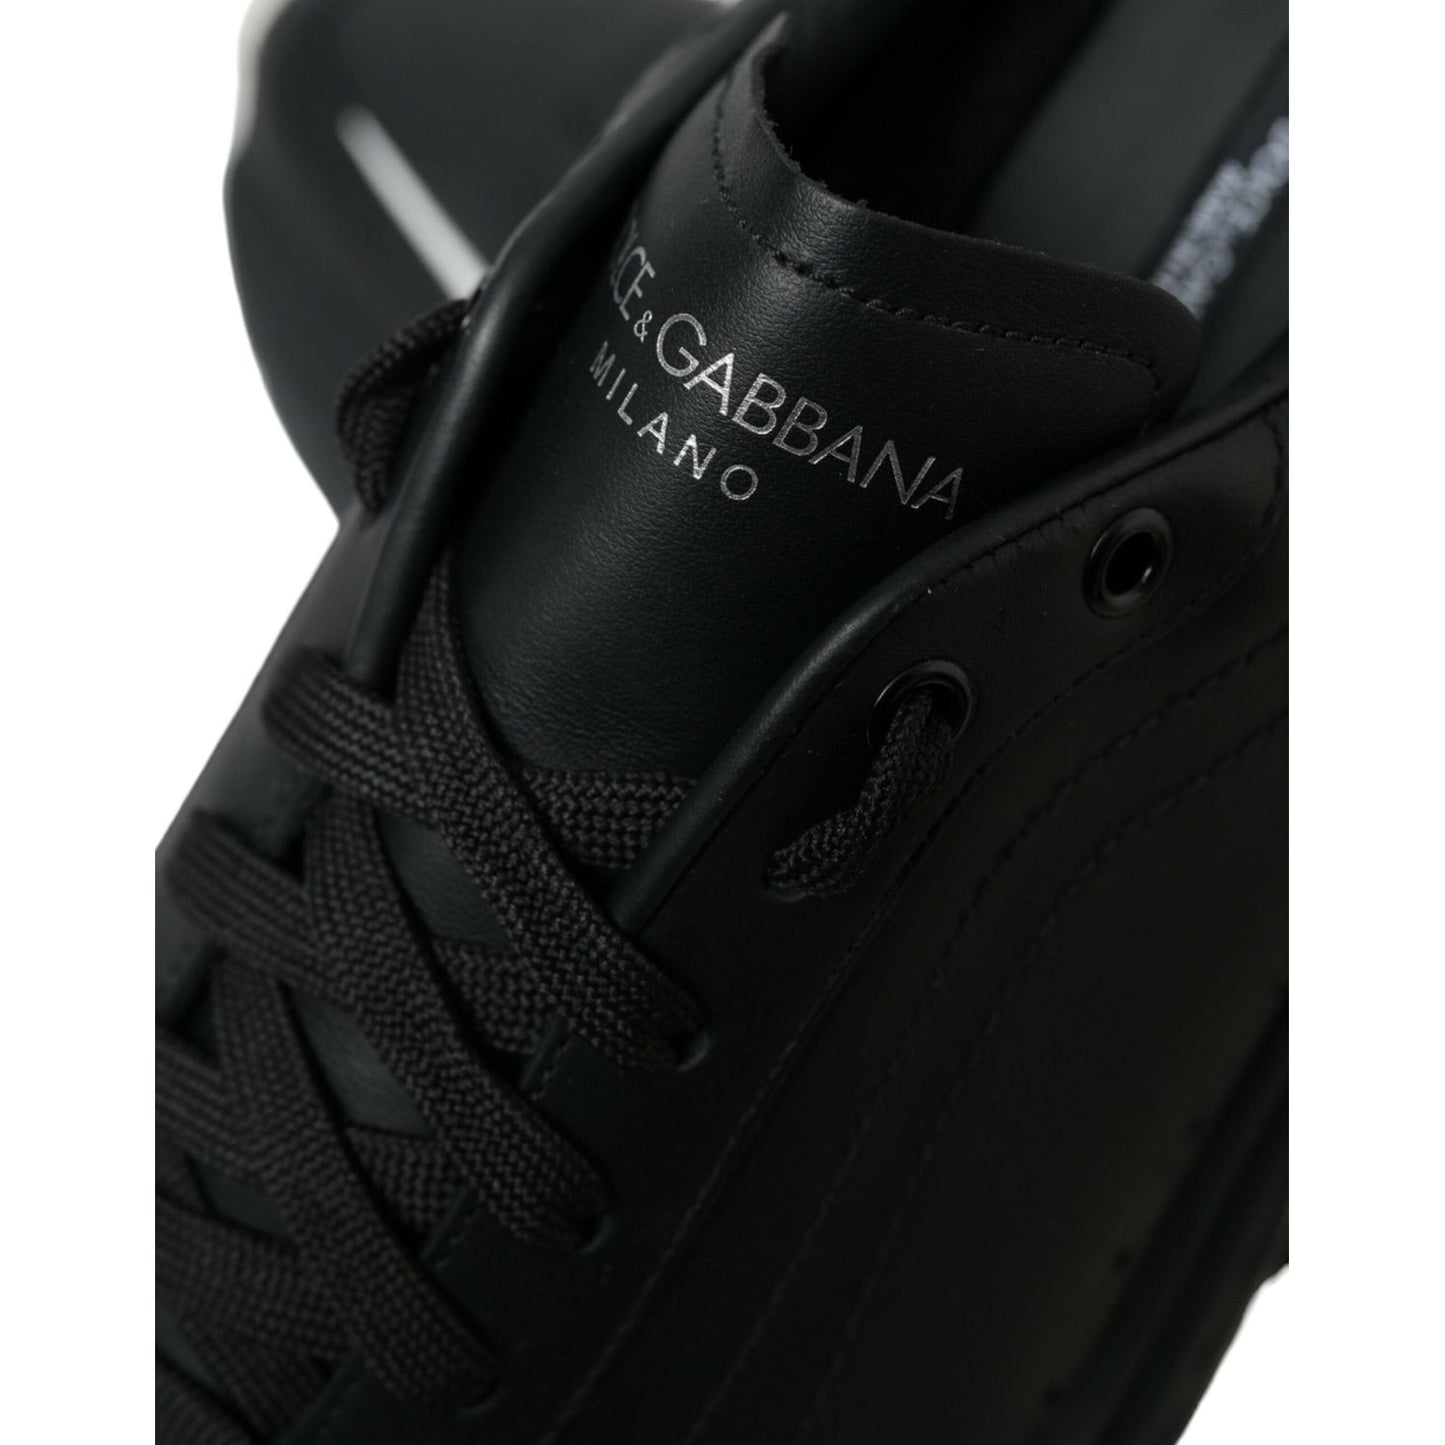 Dolce & GabbanaElevated Daymaster Black Platform SneakersMcRichard Designer Brands£609.00